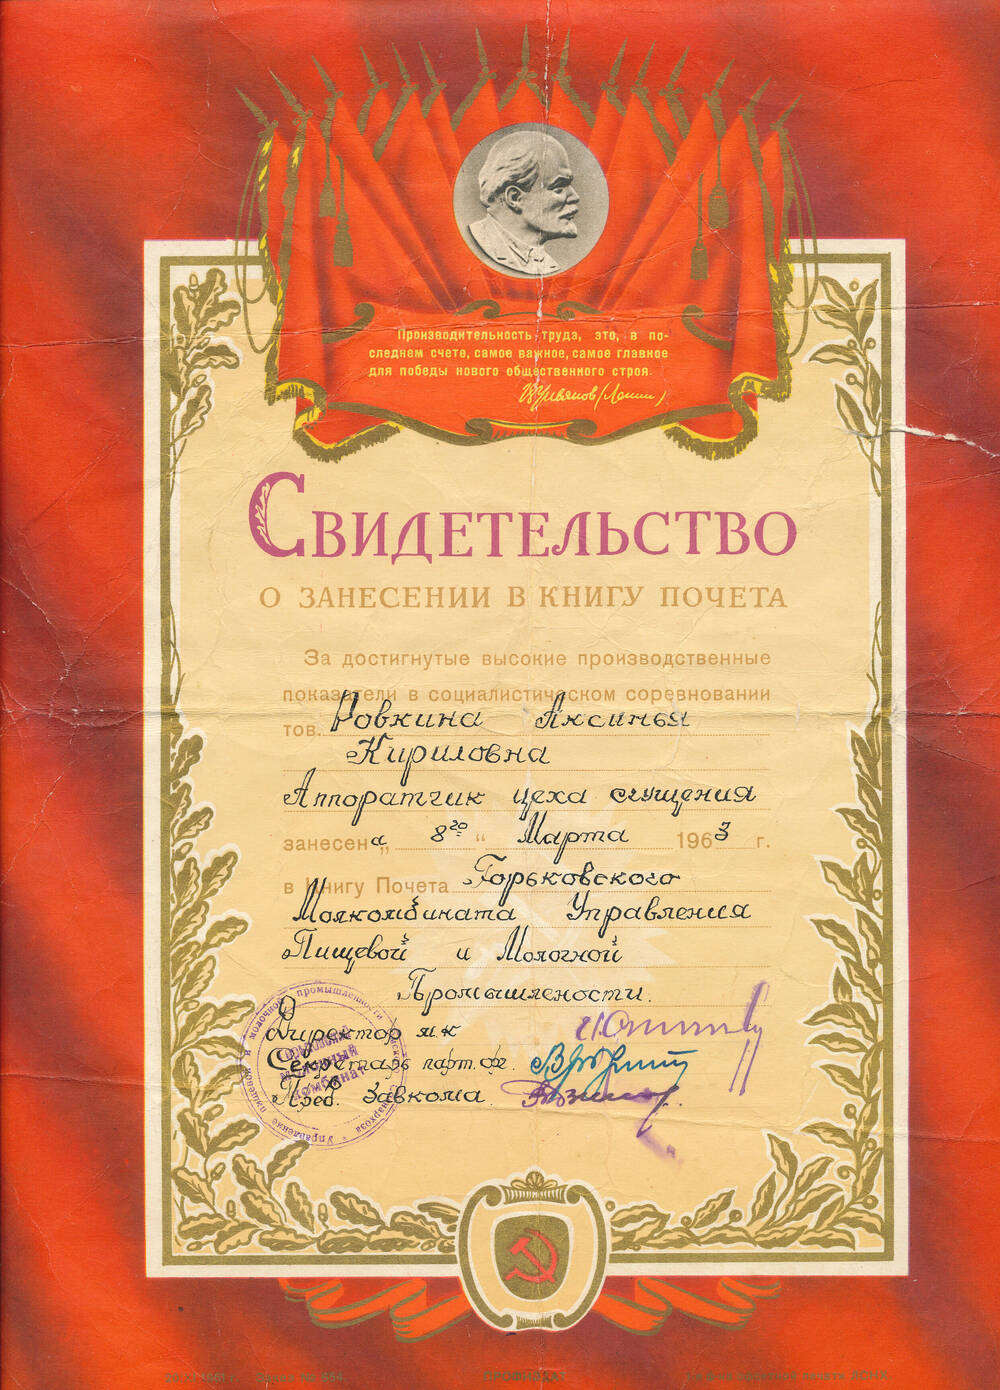 Свидетельство о занесении в Книгу Почета Ровкиной Аксиньи Корнеевны, выдано 8.03.1963 года